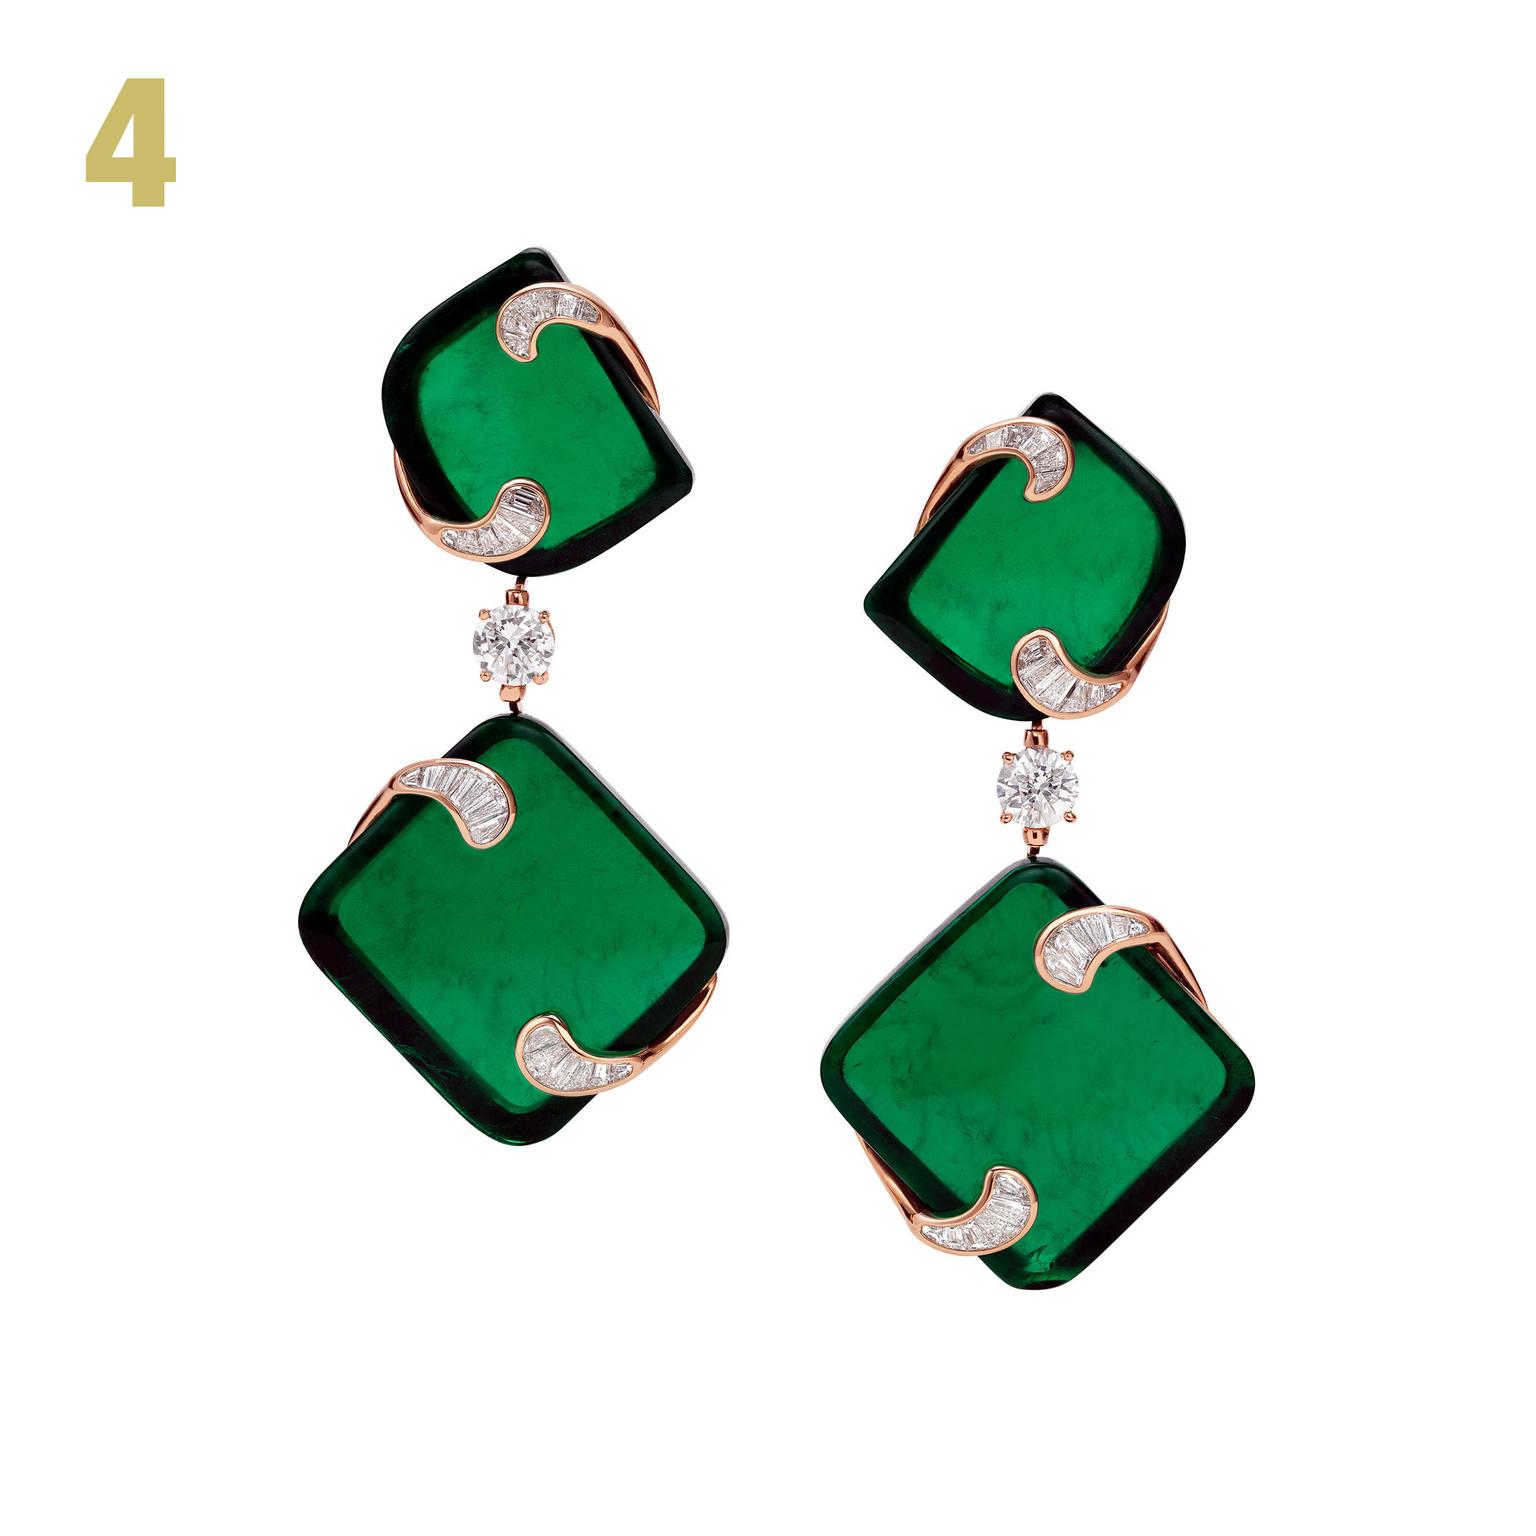 Hidden Treasures emerald earrings